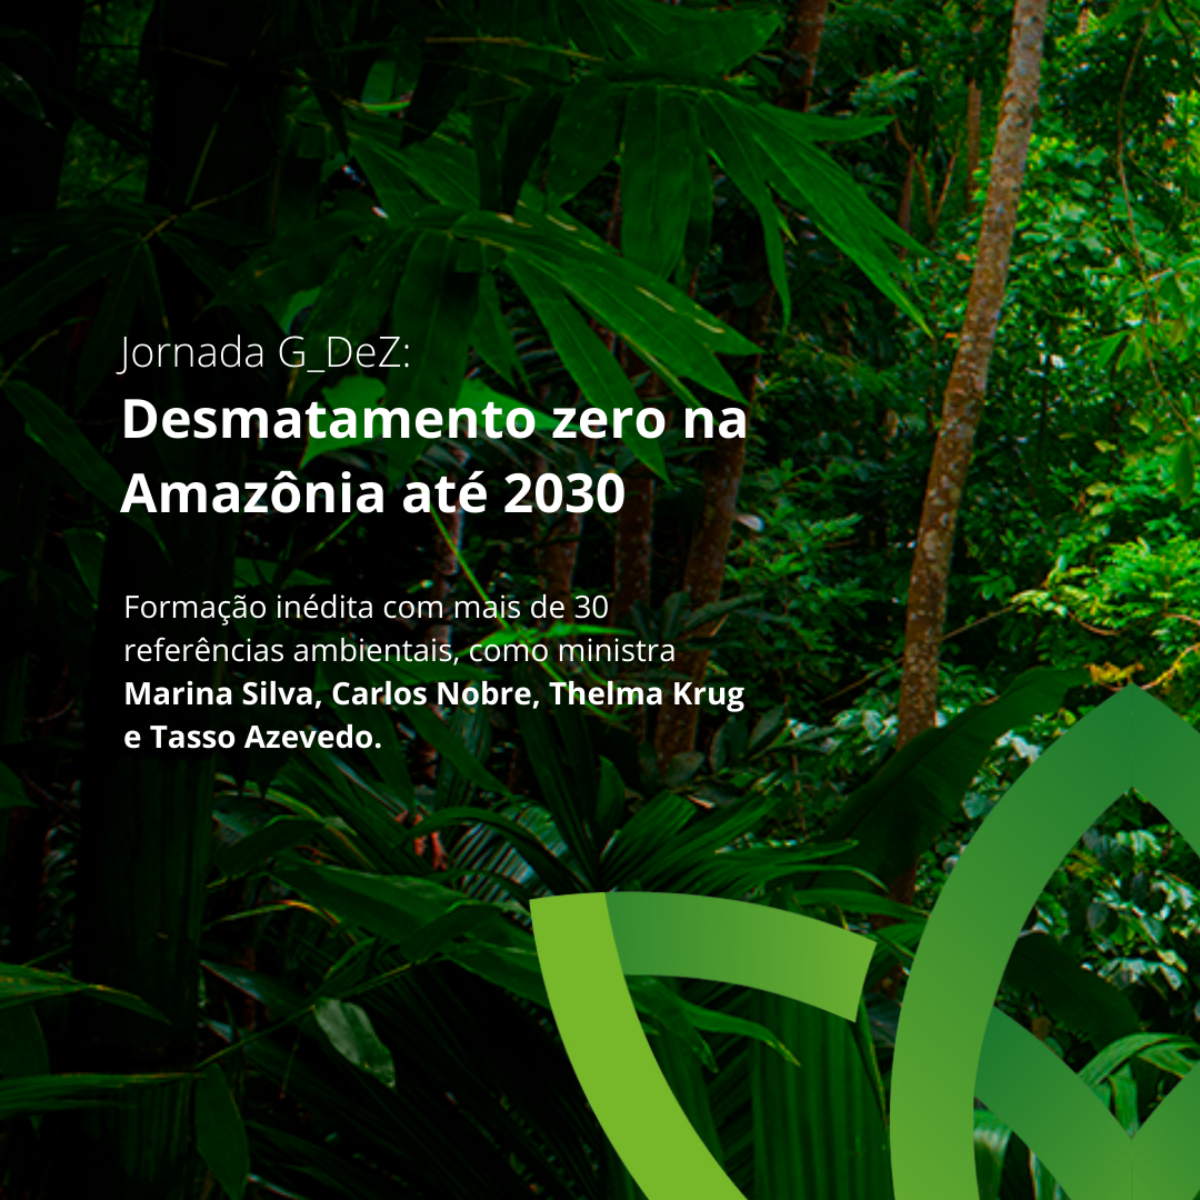 Imaflora lança formação inédita rumo ao Desmatamento Zero na Amazônia em 2030